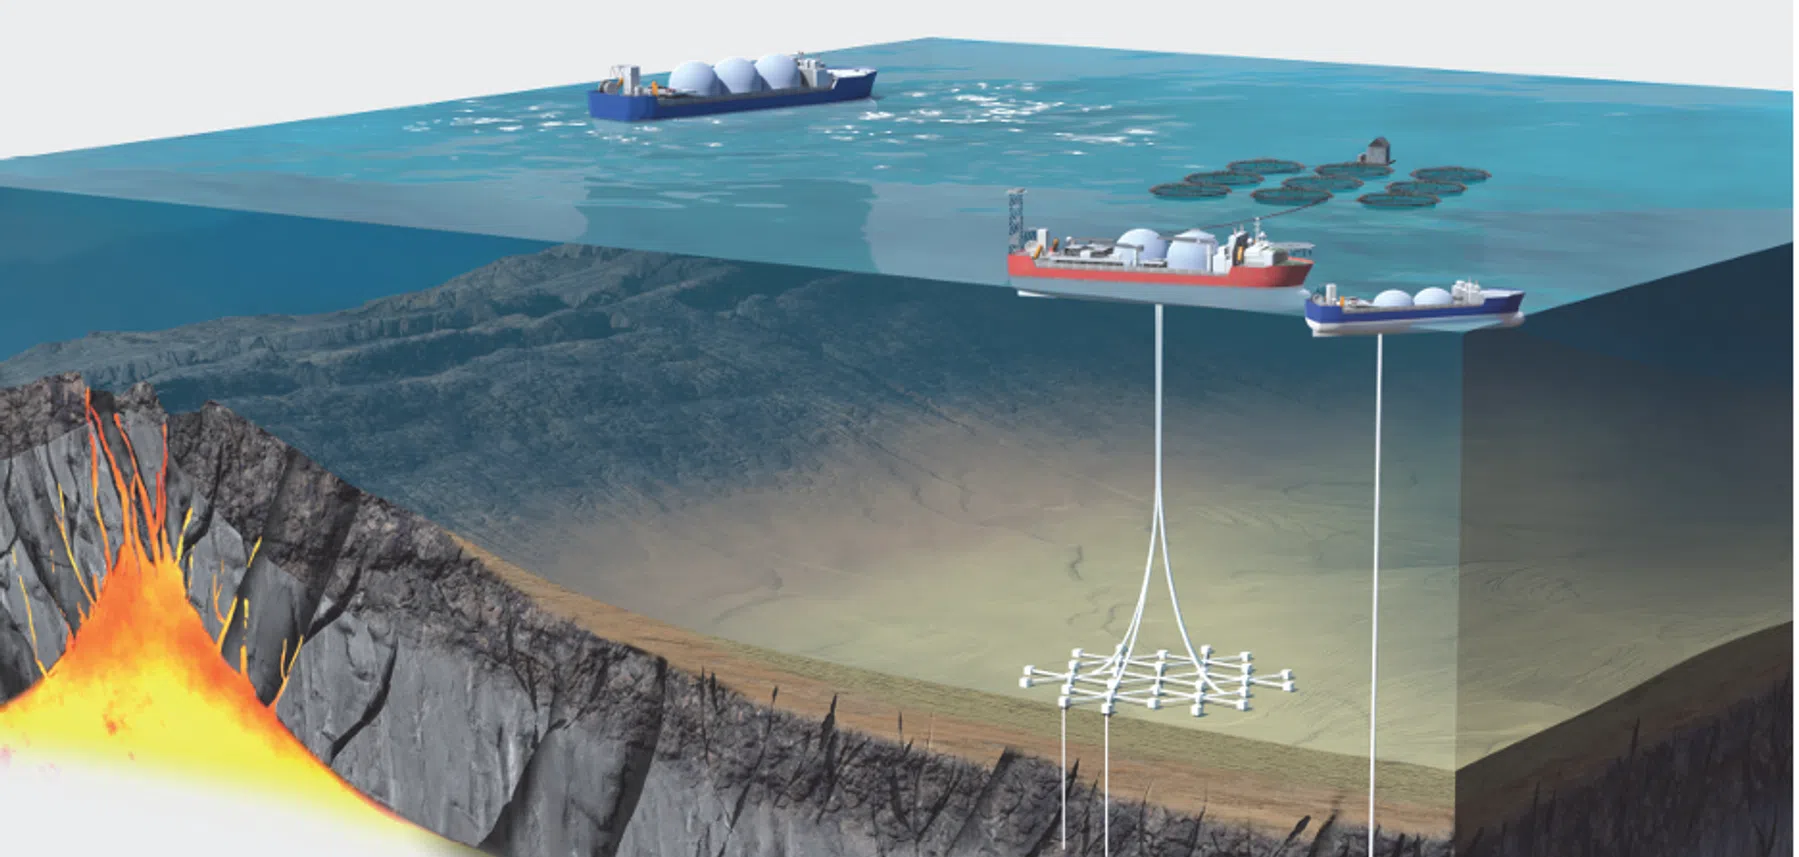 Dit bedrijf wil energie uit de zeebodem halen: de doorbraak voor groene waterstof?